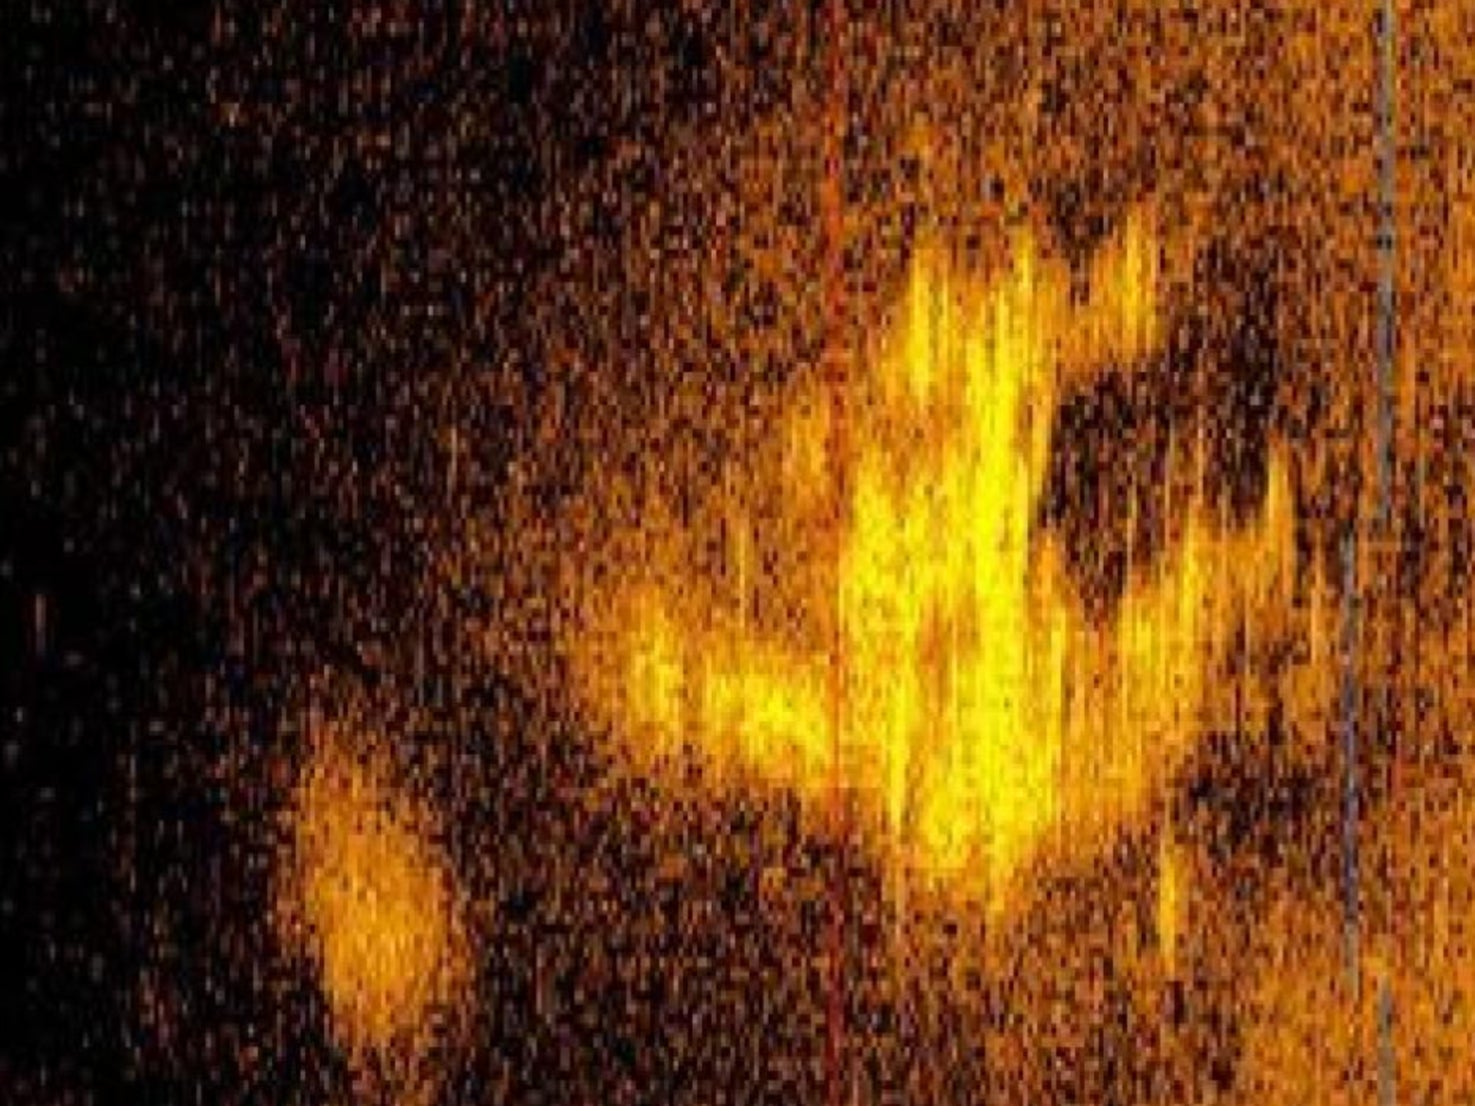 Una imagen de sonar captada por Deep Sea Vision, una empresa de exploración submarina de los Estados Unidos, podría indicar la ubicación de los restos del avión de Amelia Earhart que se perdió en el océano Pacífico